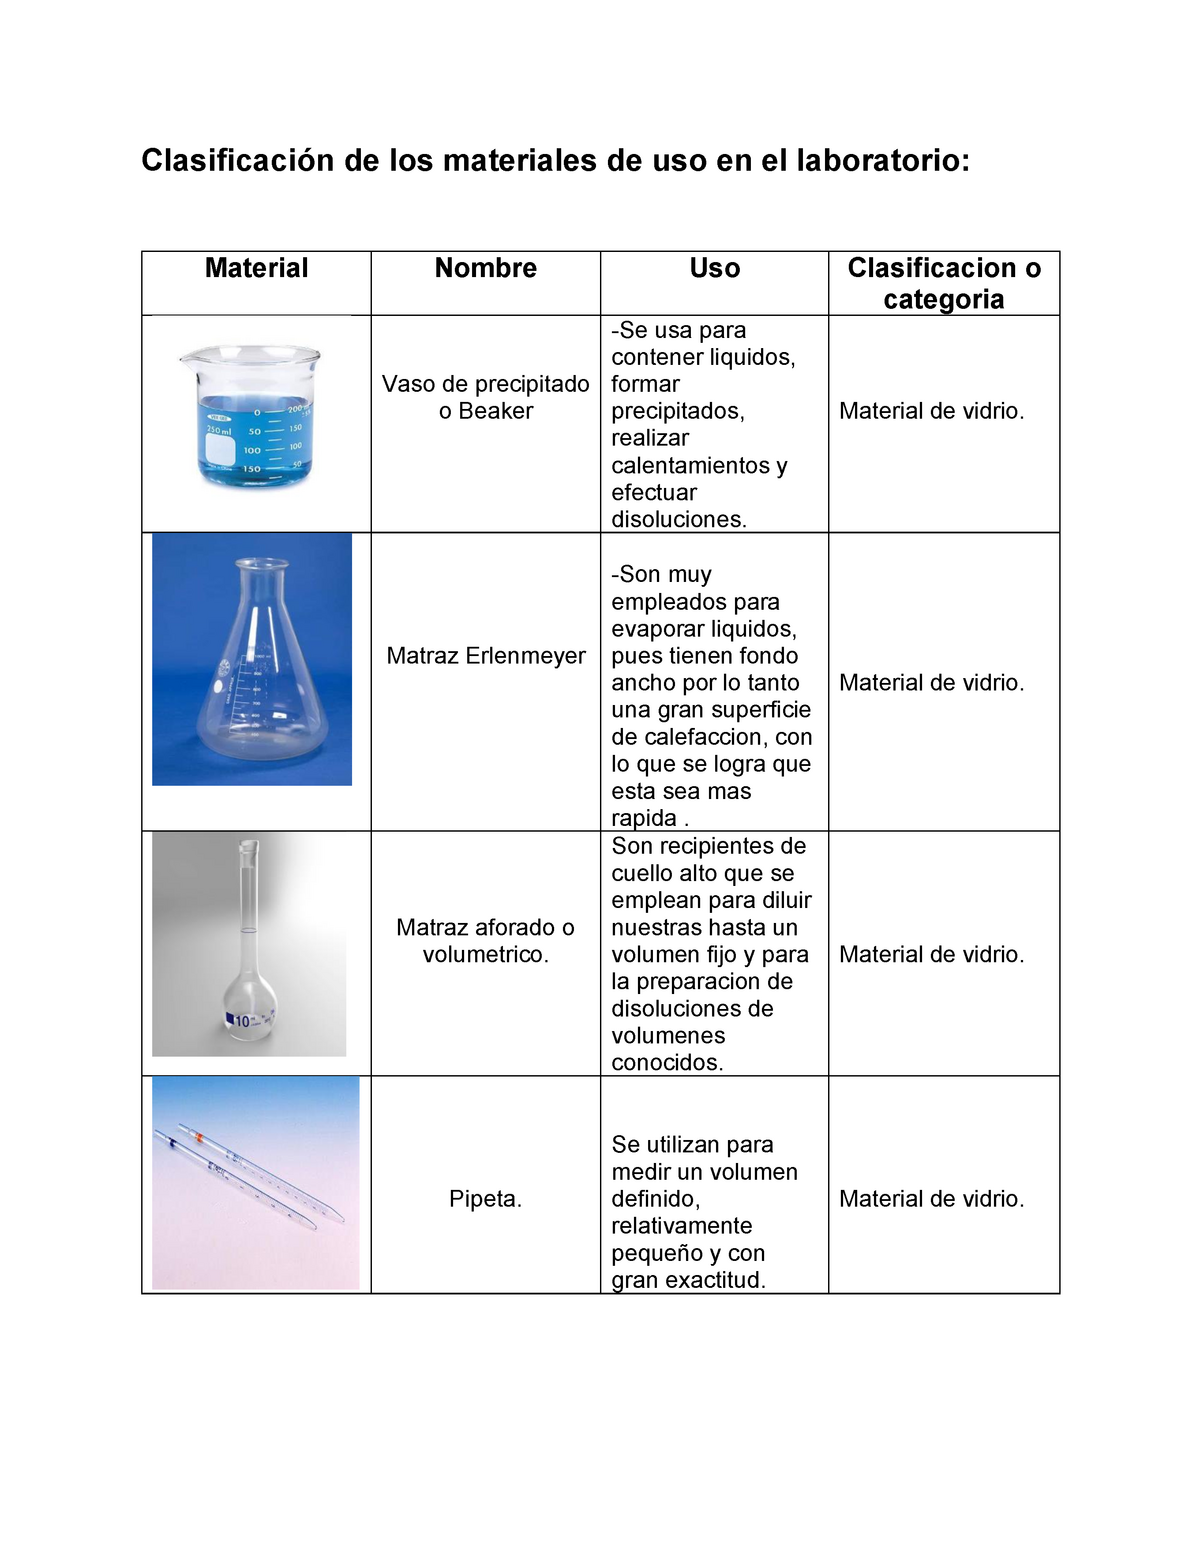 Clasificación de los materiales de uso en el laboratorio - Warning: TT: undefined function: 32 StuDocu